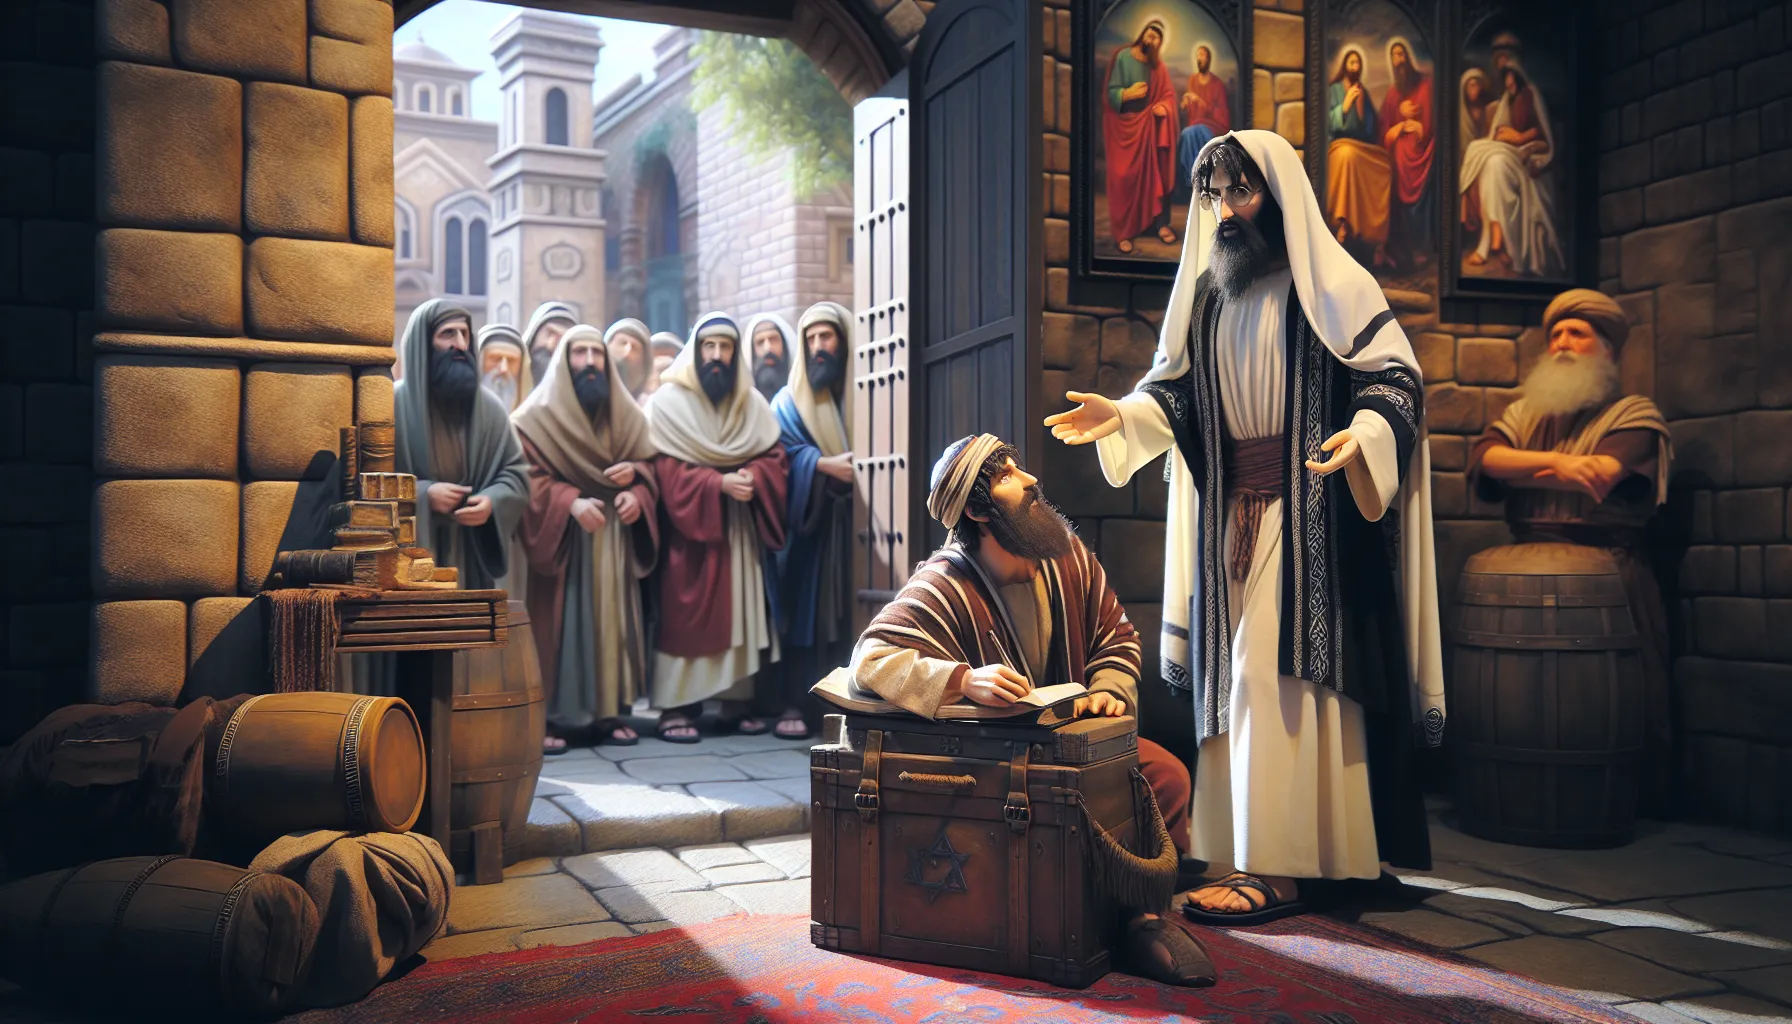 Imagen representando a Nicodemo, un líder religioso judío, durante su encuentro con Jesús, destacando su viaje hacia la salvación.